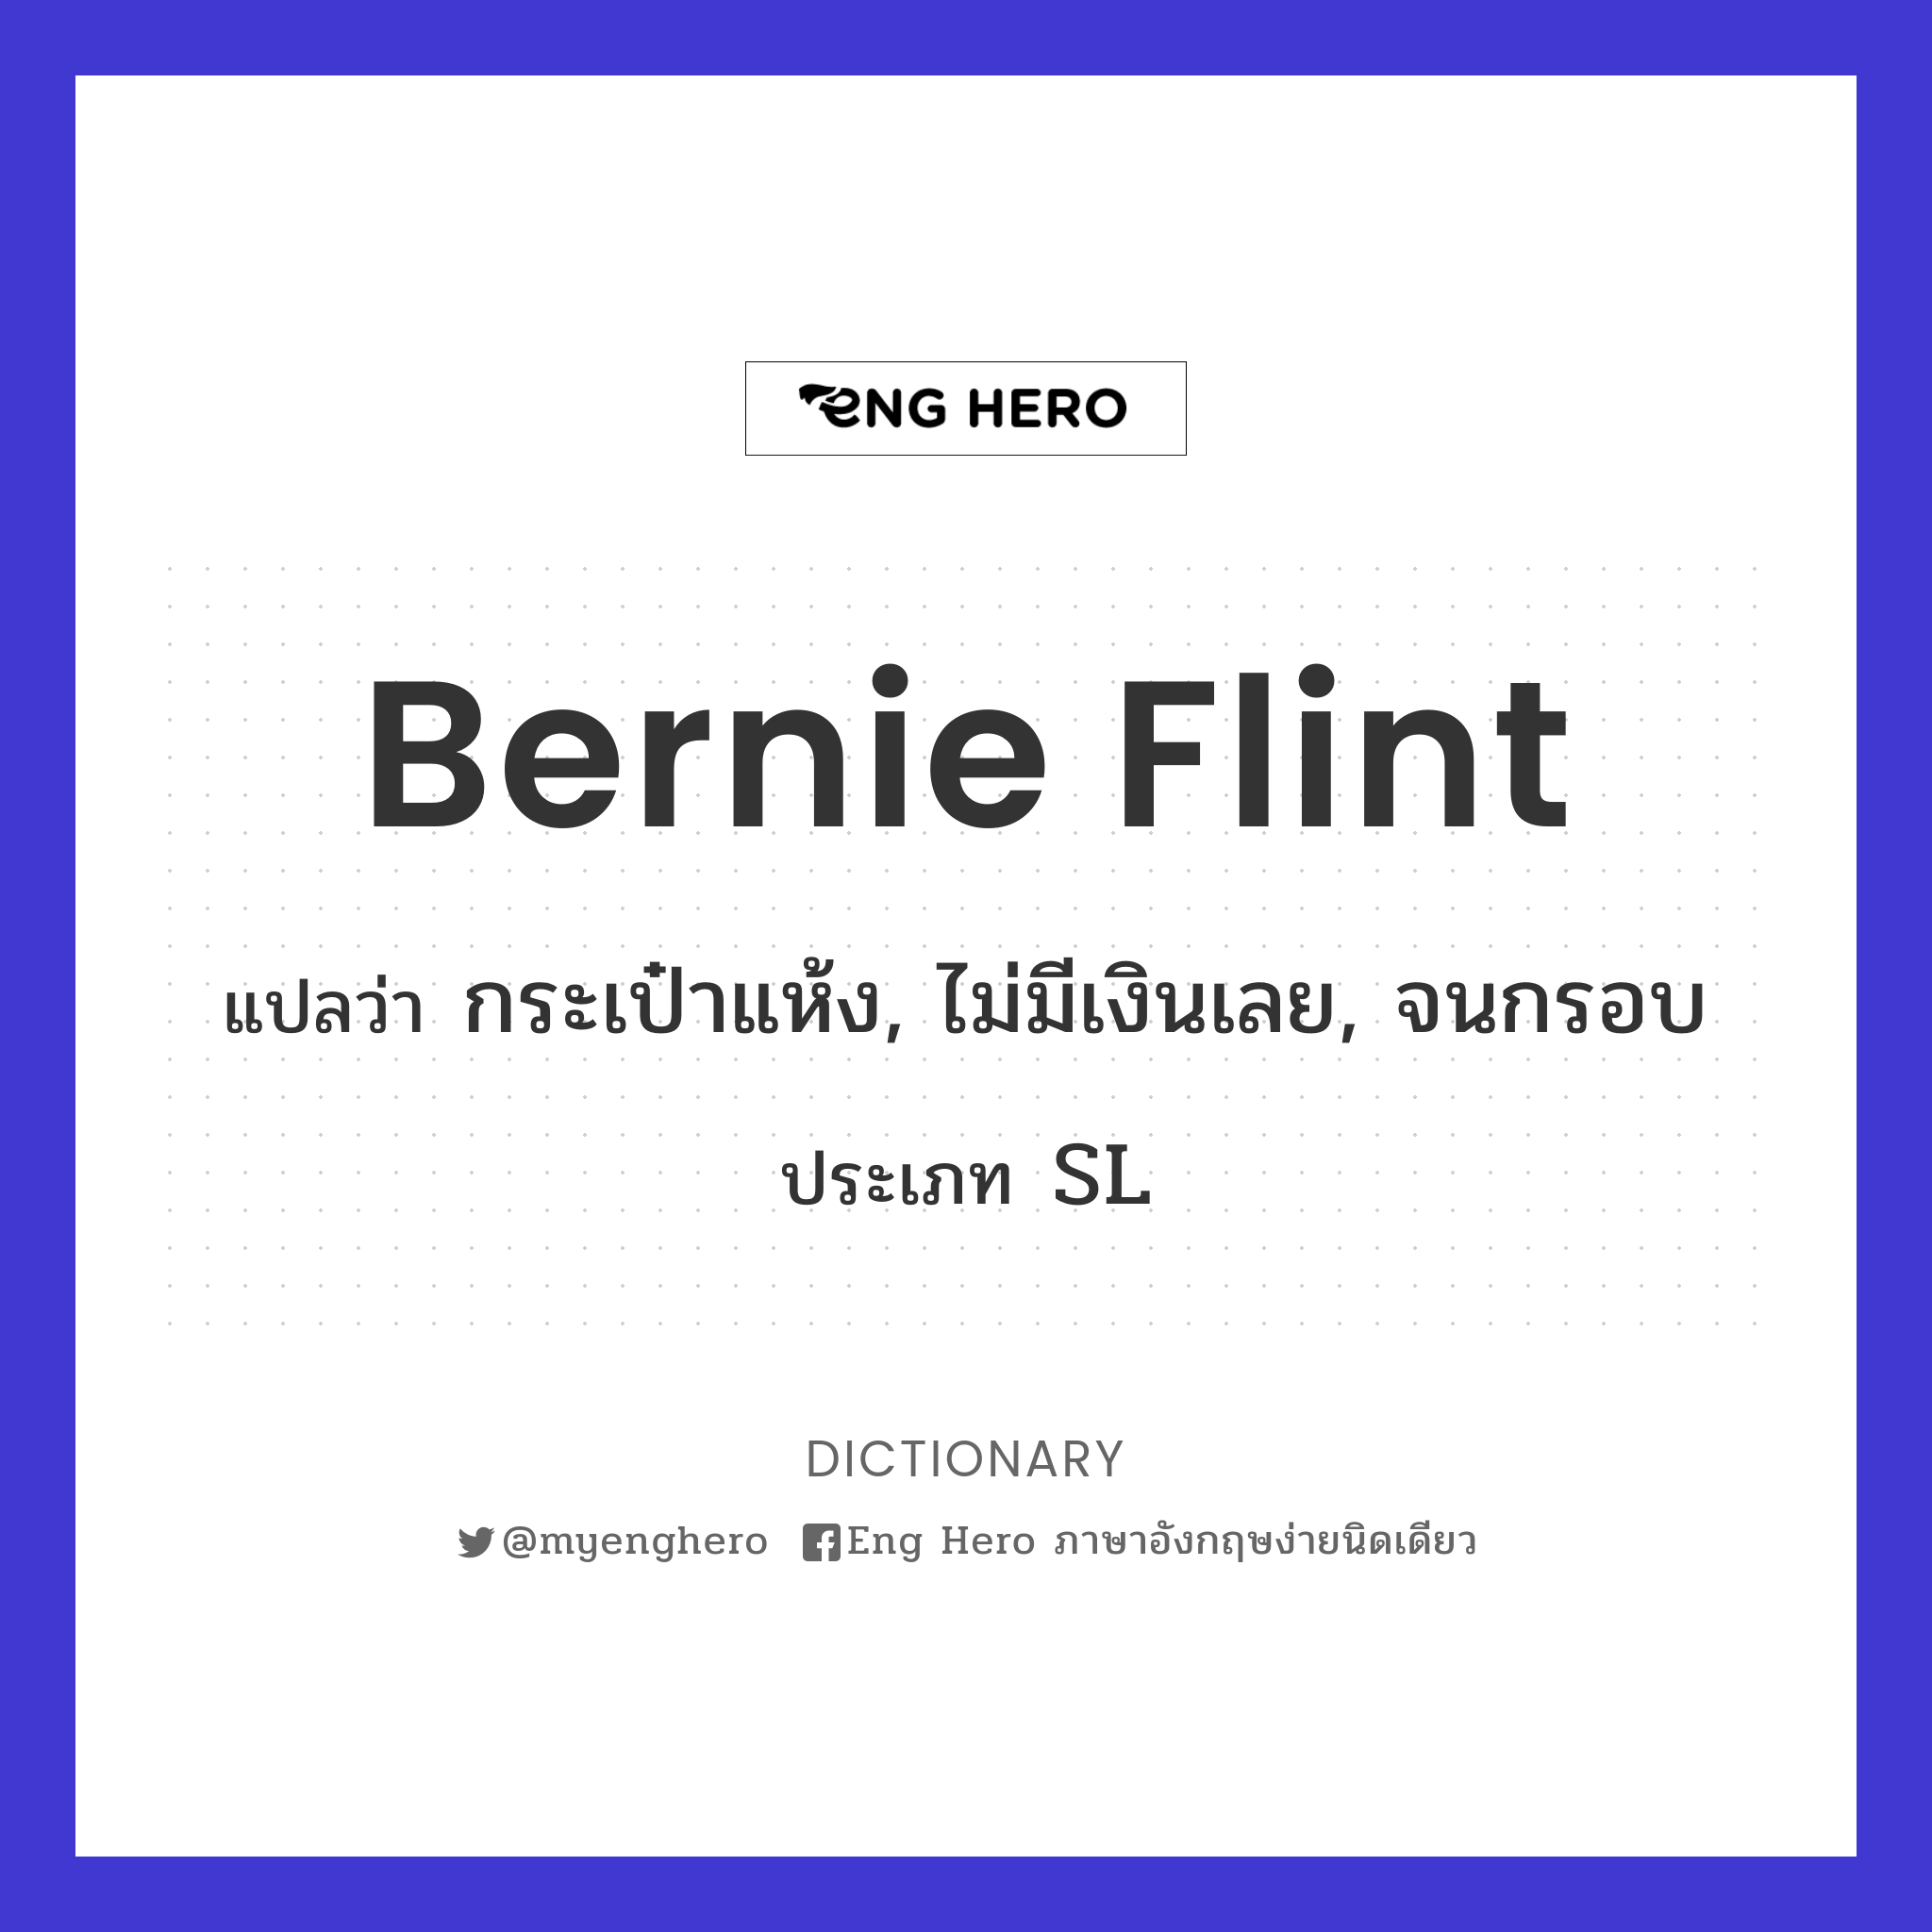 Bernie Flint